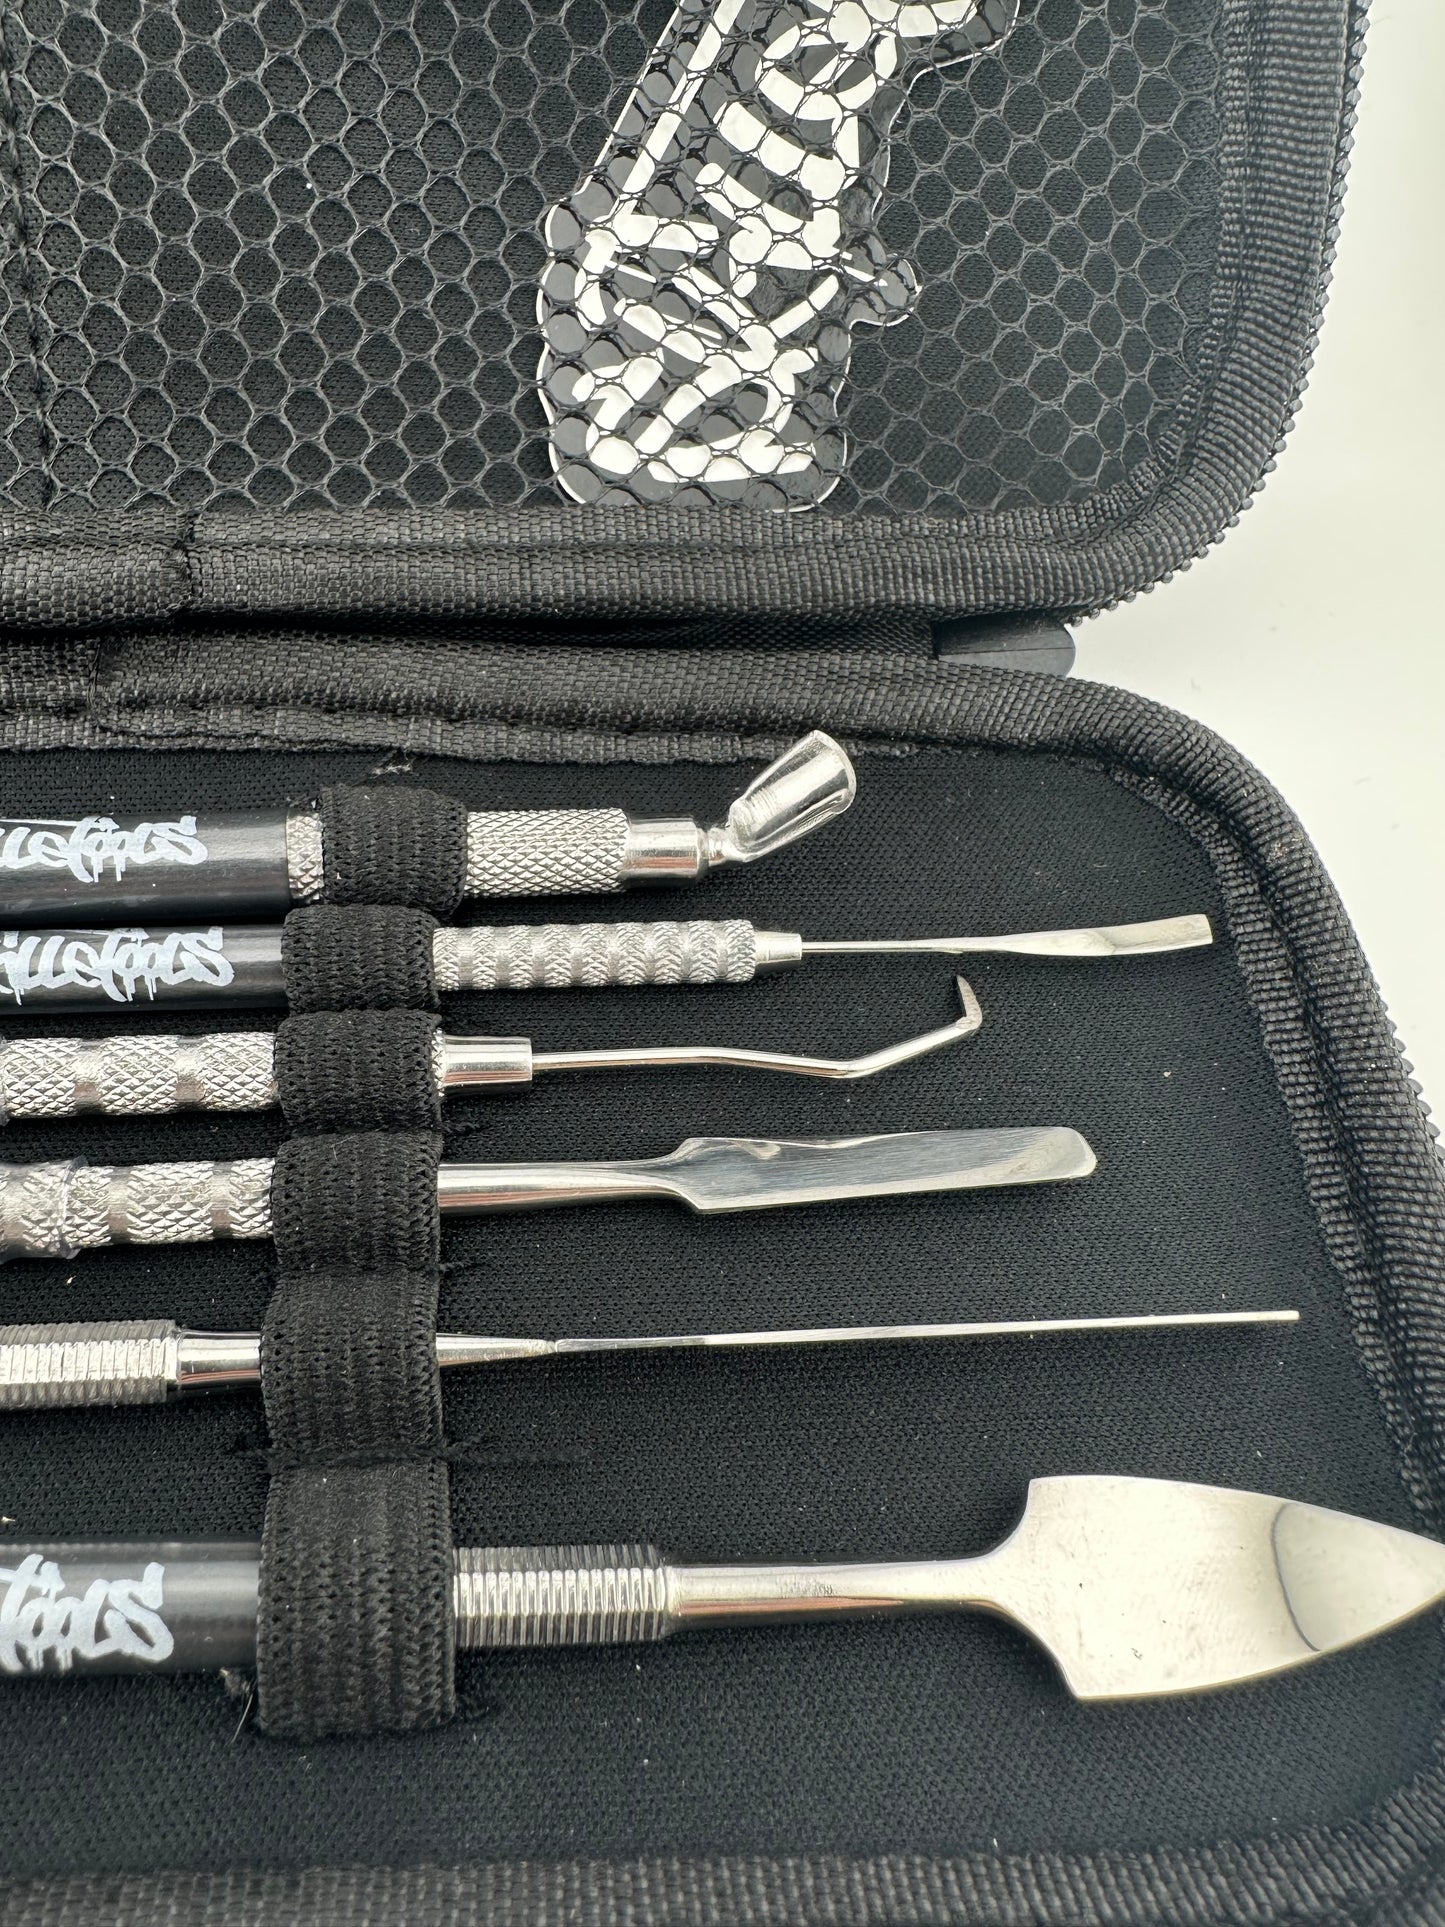 Skillet Tools Master kit Dab Tool Set